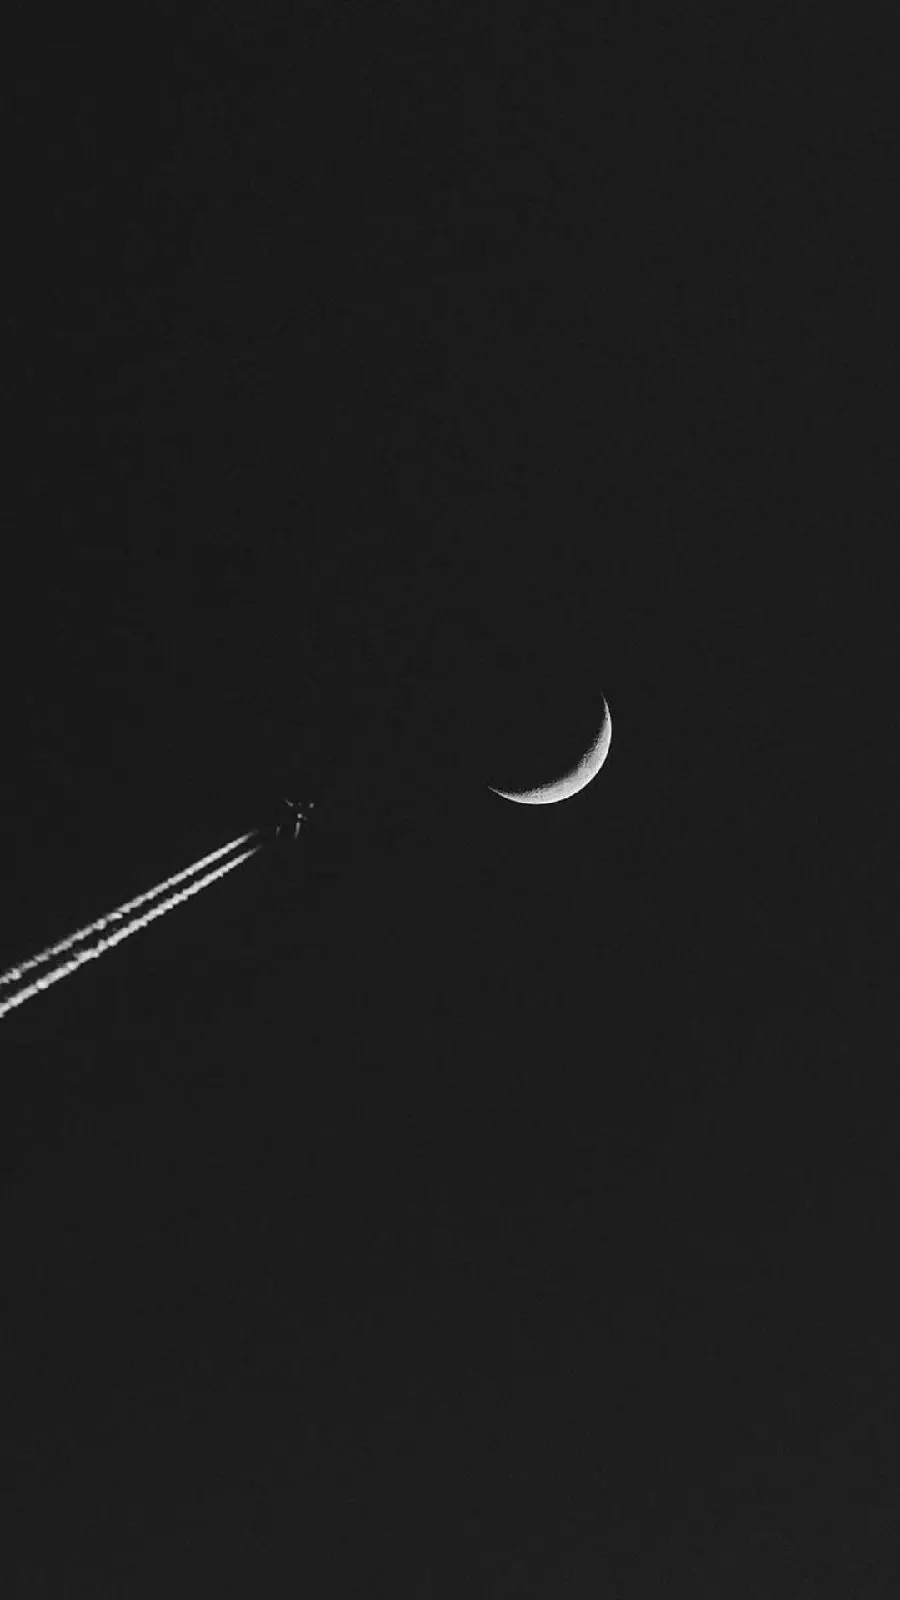 والپیپر مینیمال مشکی پرواز با شتاب و سرعت زیاد به سمت هلال ماه